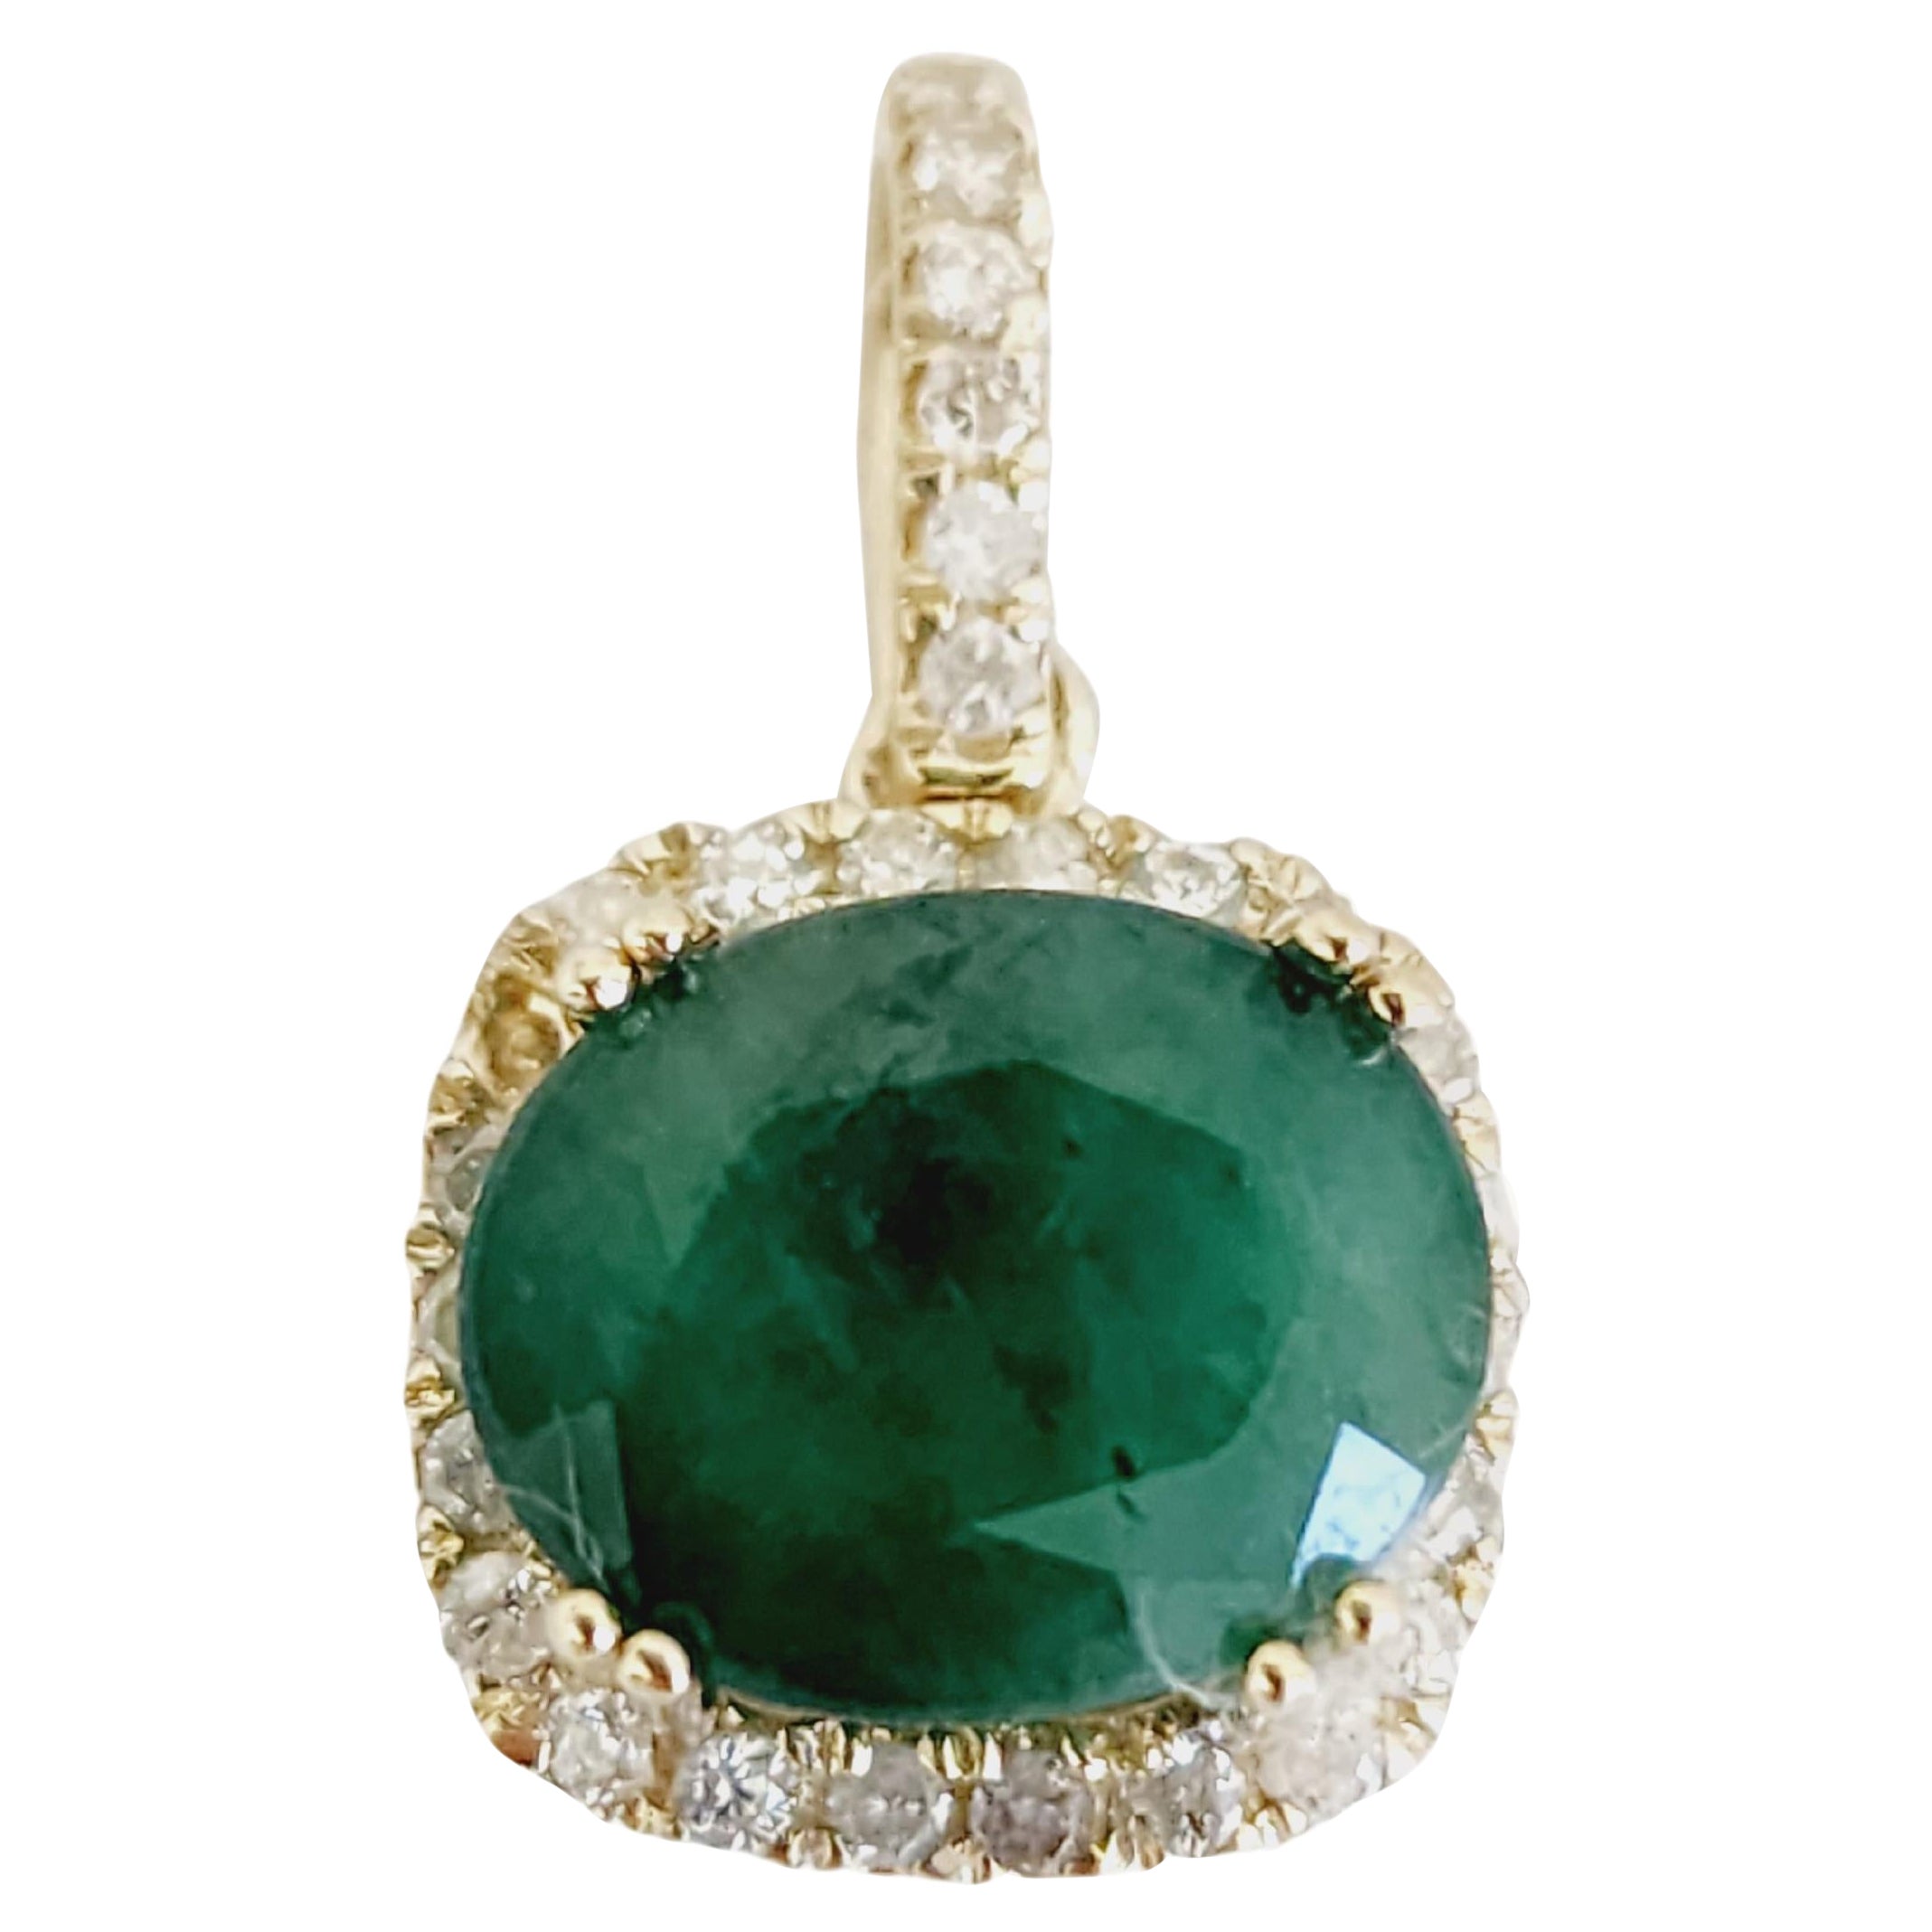 3.80 Carats Natural Emerald Diamond Pendant Yellow Gold 14 Karat